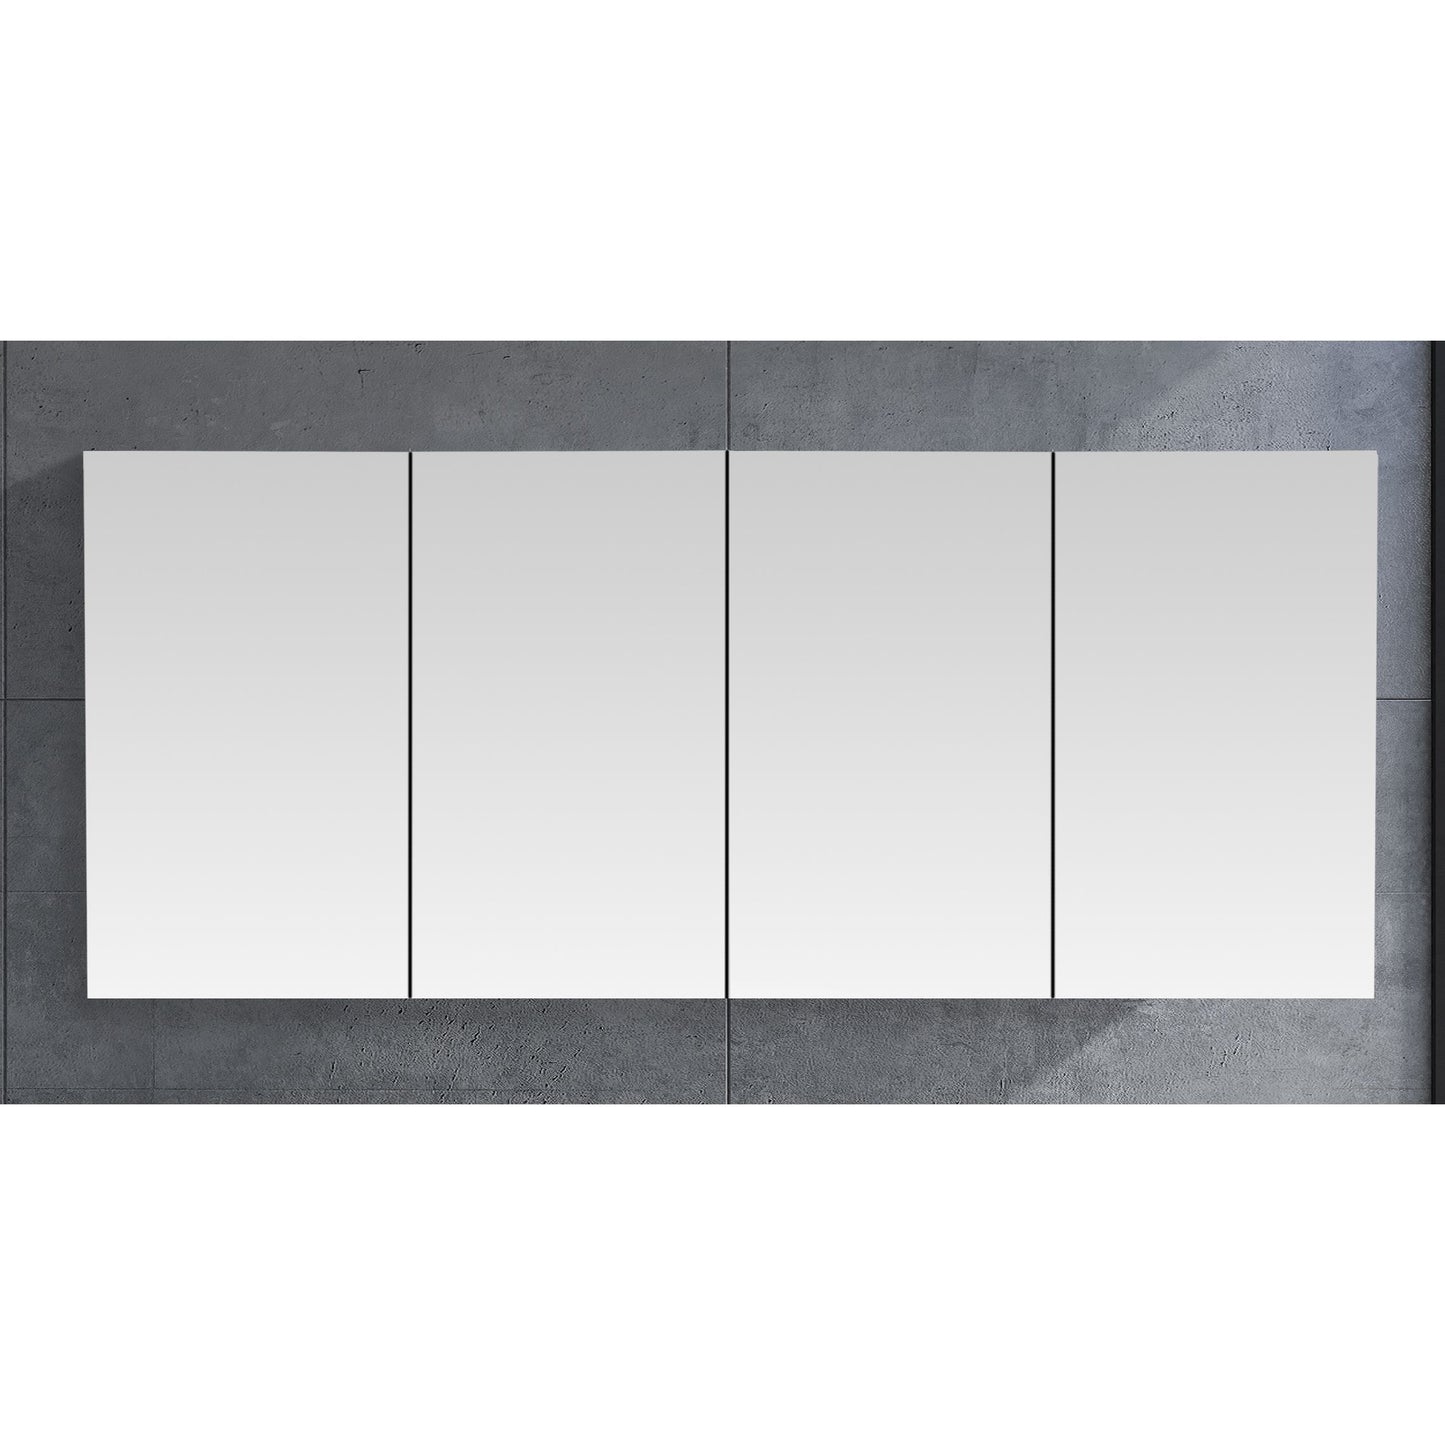 MELA - PORTER 1800 Snafell Mirror Cabinet with Doors